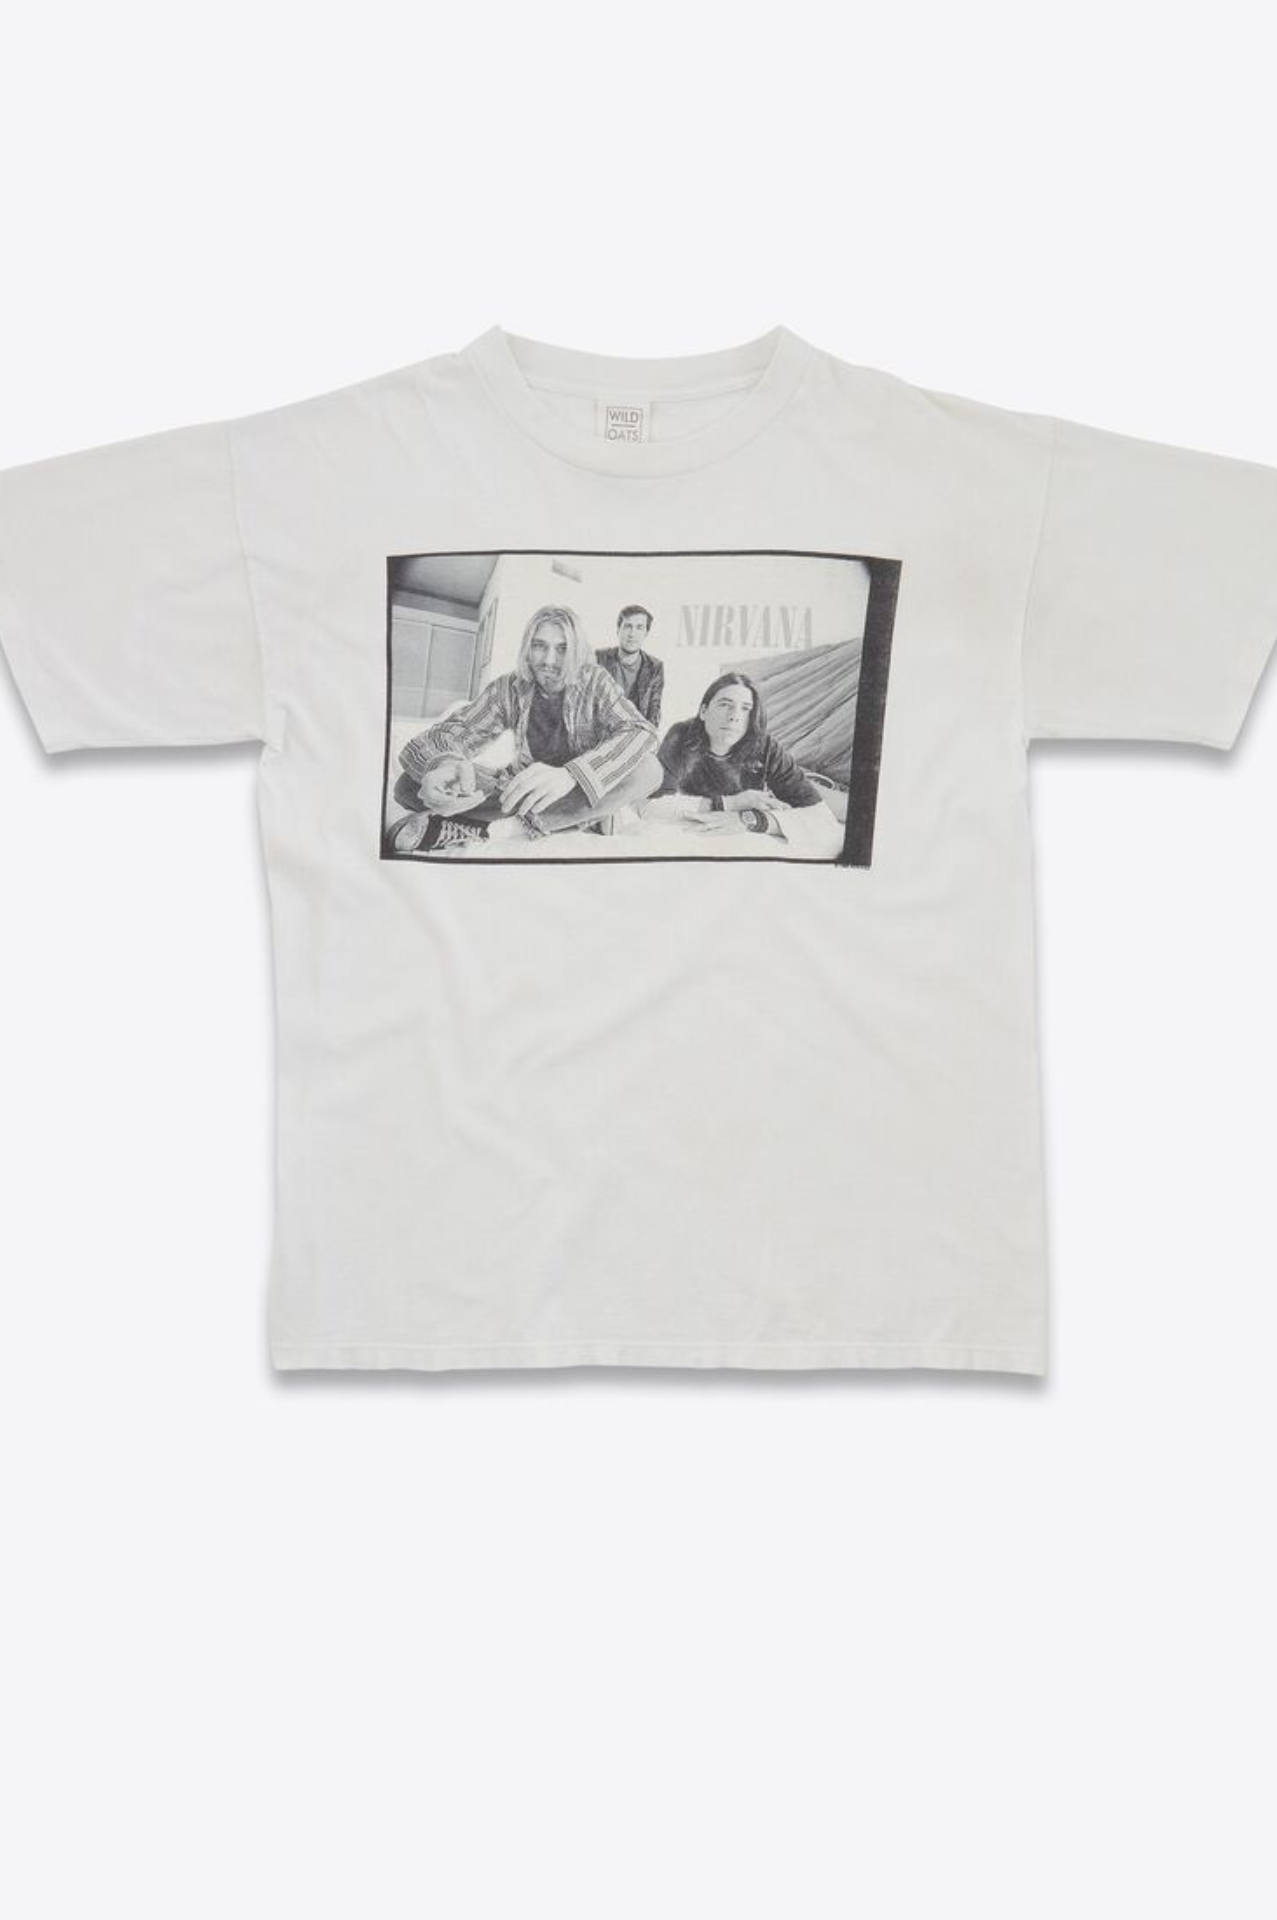 Saint Laurent y las Camisetas de Nirvana: Un Lujo al Alcance de Pocos